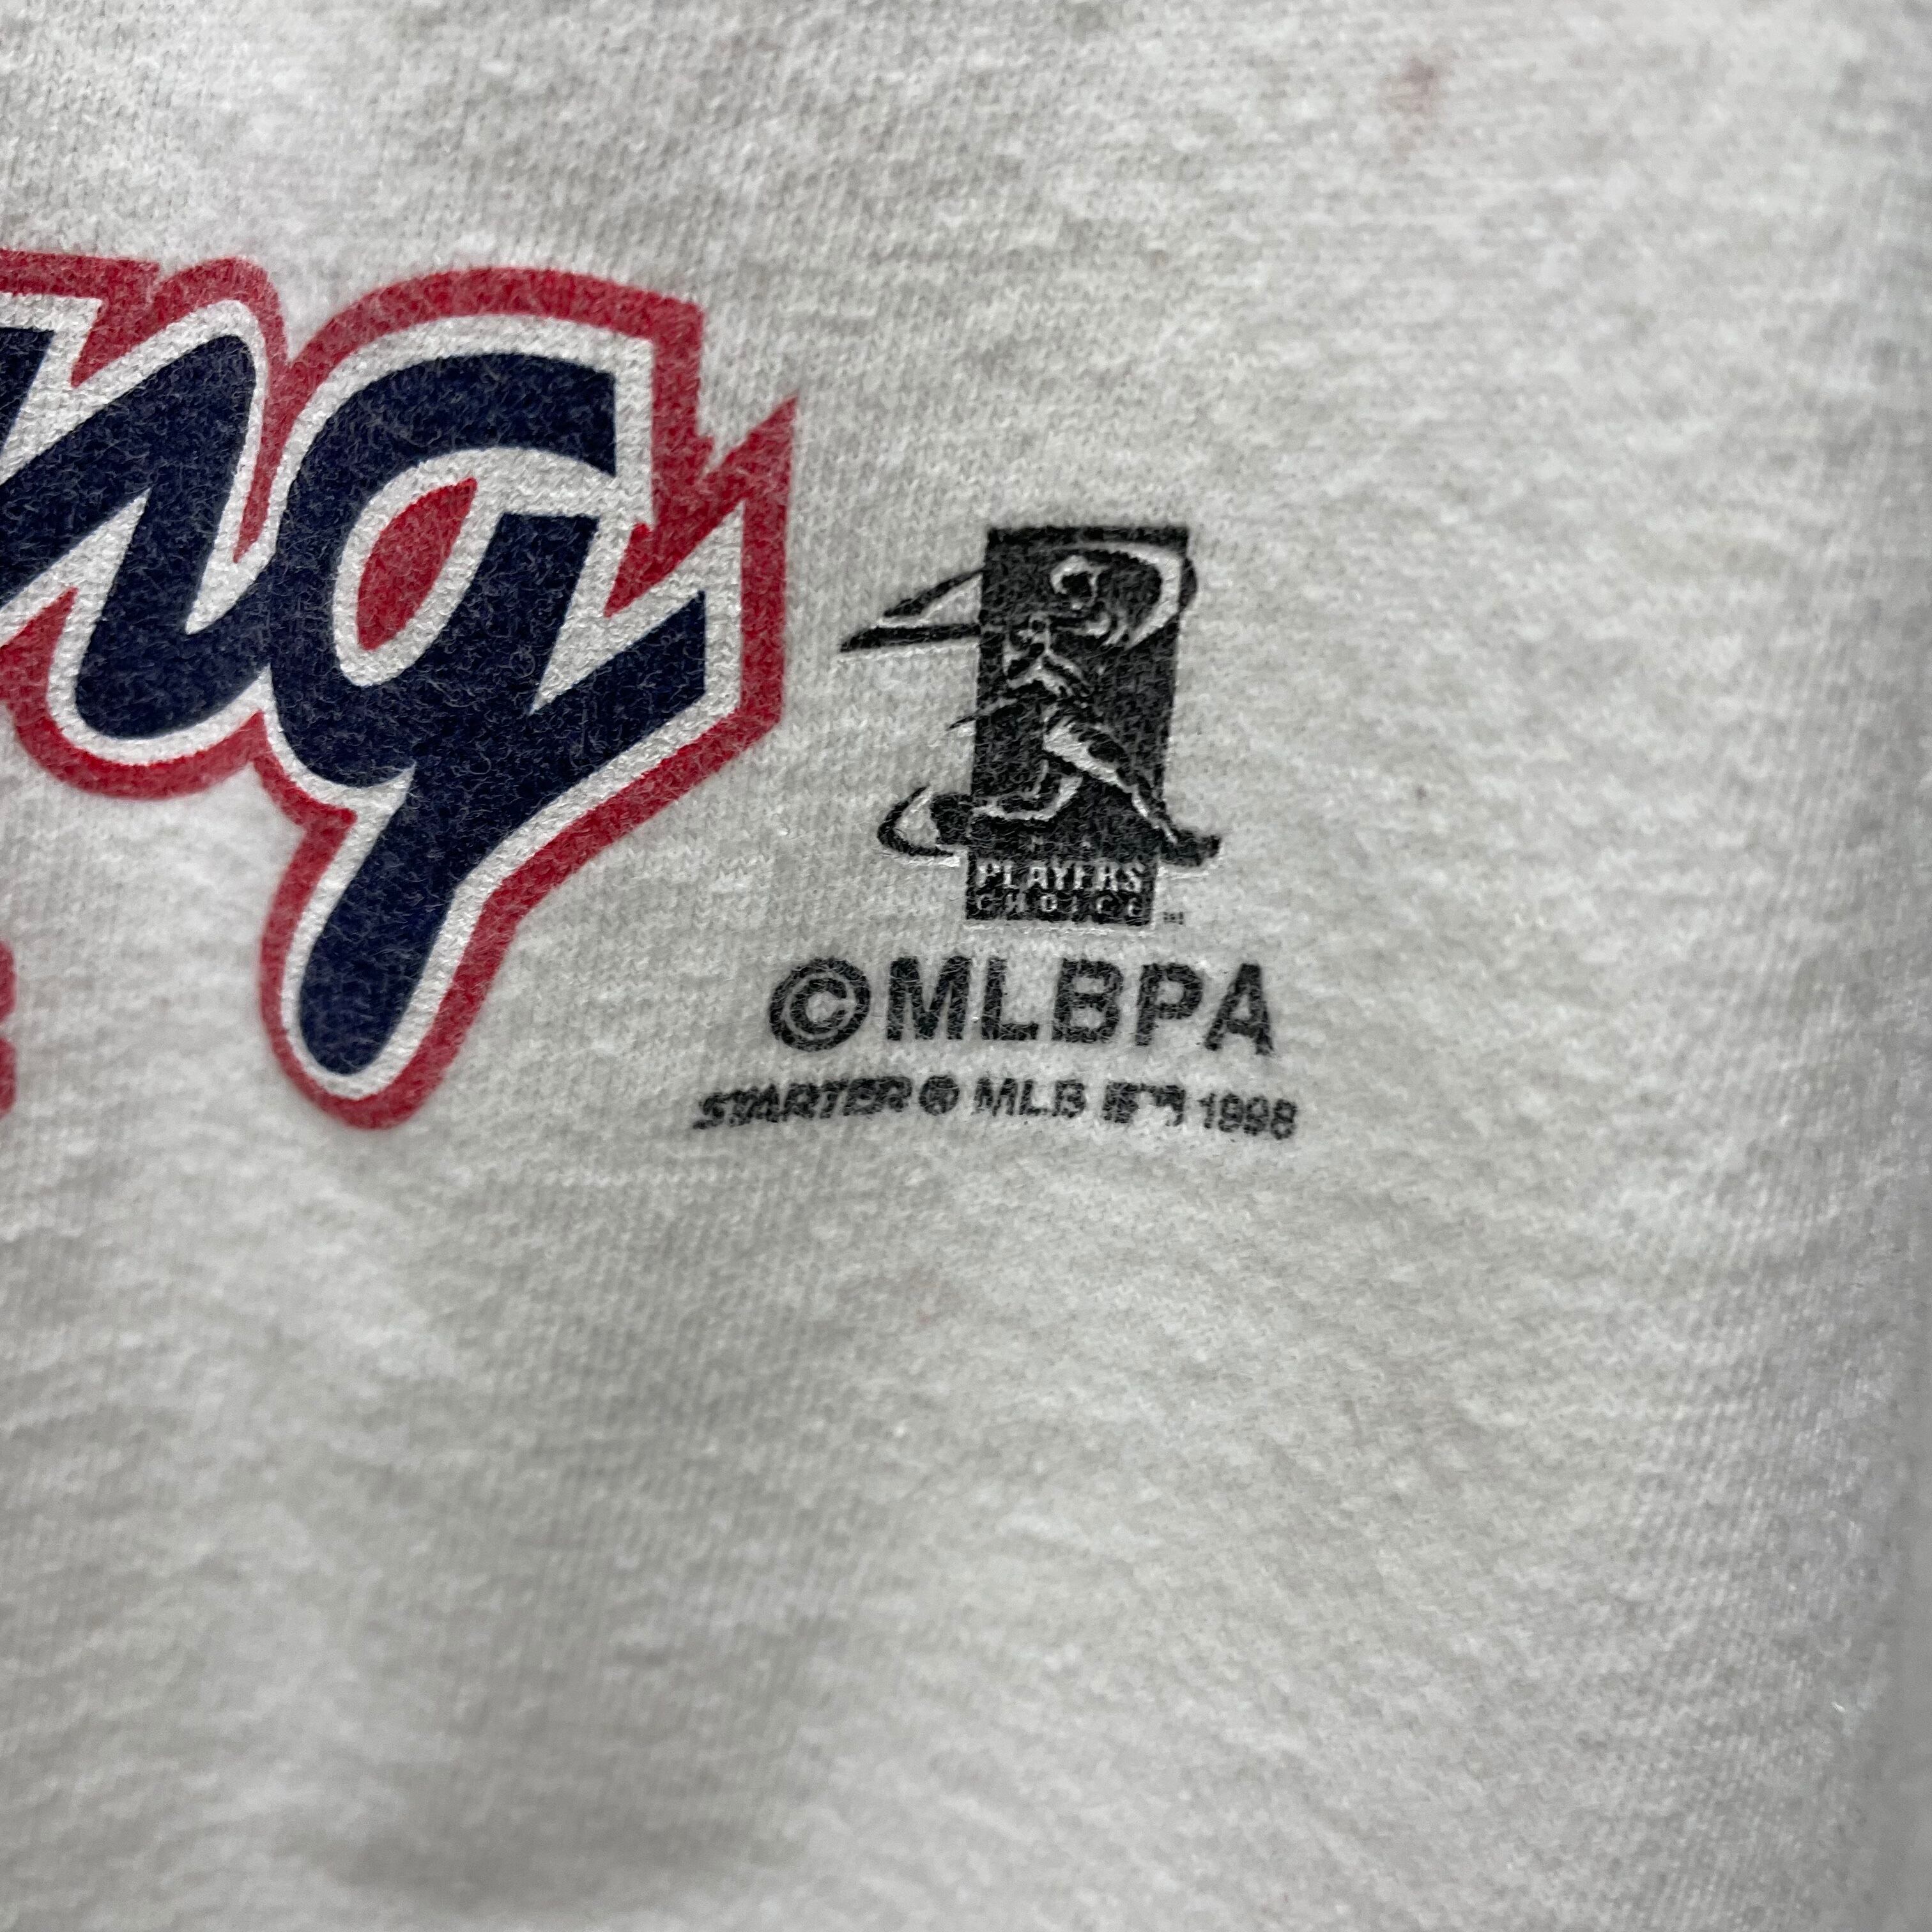 90s スターター MLB ベースボール tシャツ XL 古着 古着屋 埼玉